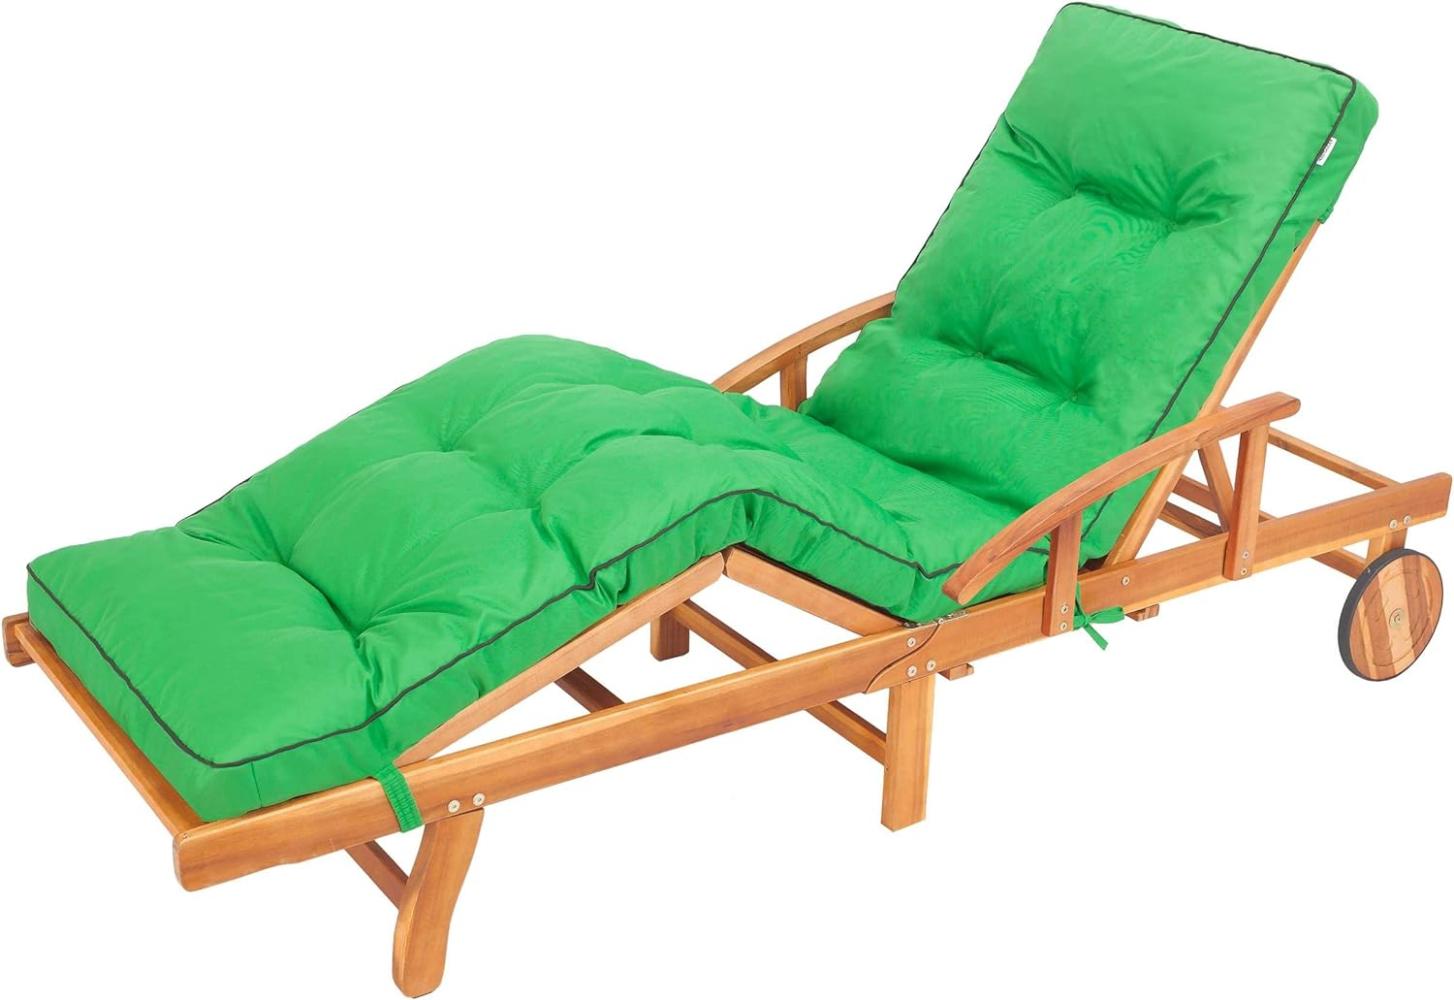 Bjird Liegenauflage, Auflage für Gartenliege 200 x 55 x 8 cm, Auflagen für Deckchair, Polsterauflage für Sonnenliege, Kissen für Liegestuhl, gesteppt - Grün Bild 1